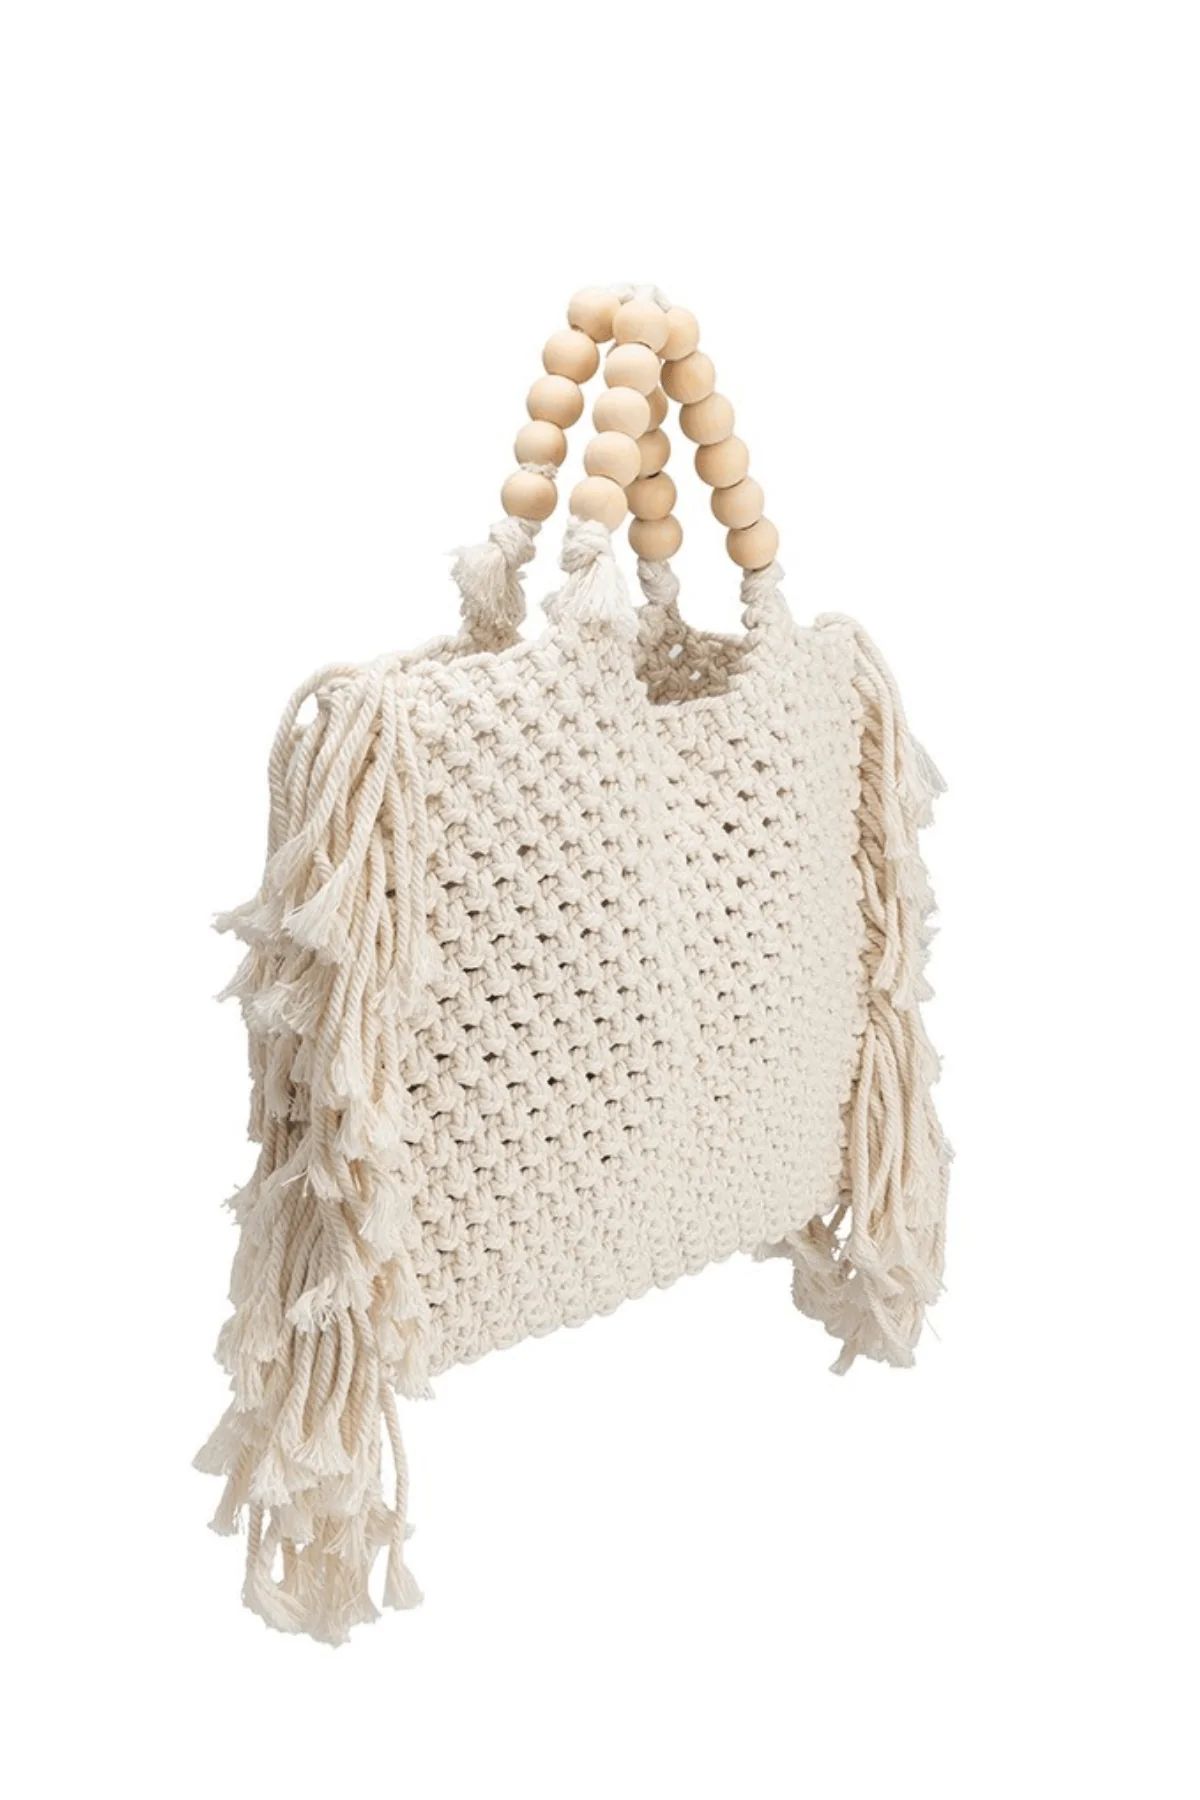 Melie Bianco Lithbet Crochet Fringe Beach Bag | Social Threads